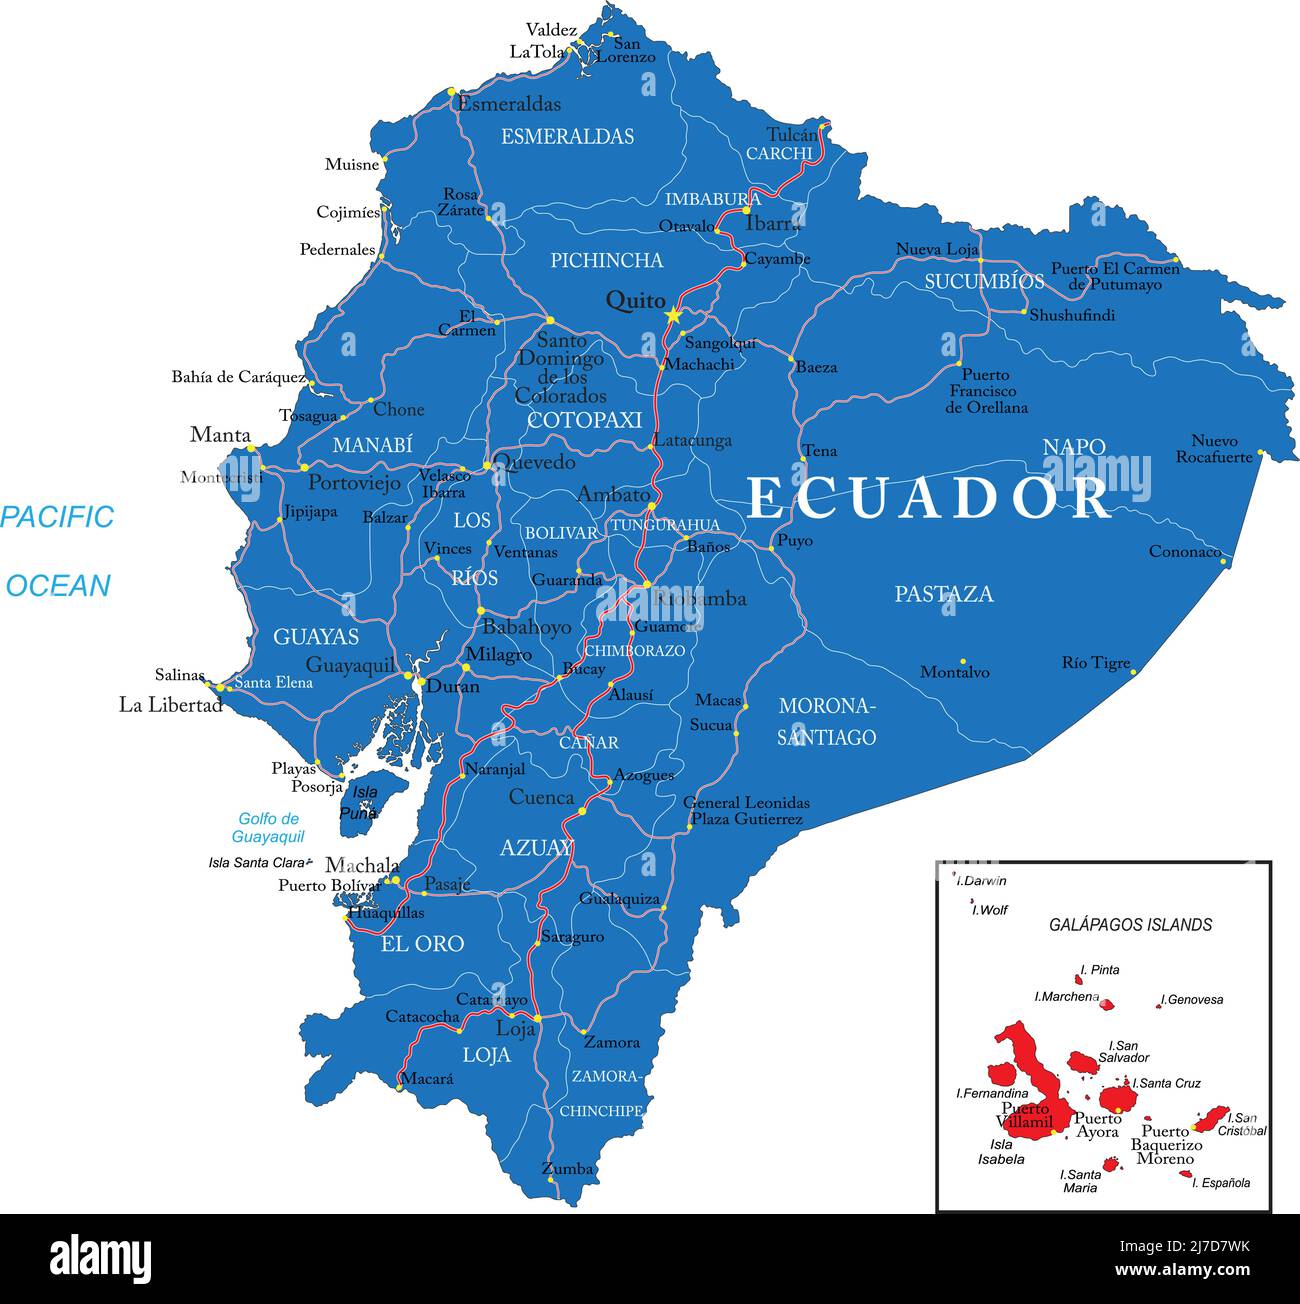 Mappa vettoriale molto dettagliata dell'Ecuador con regioni amministrative, principali città e strade. Illustrazione Vettoriale